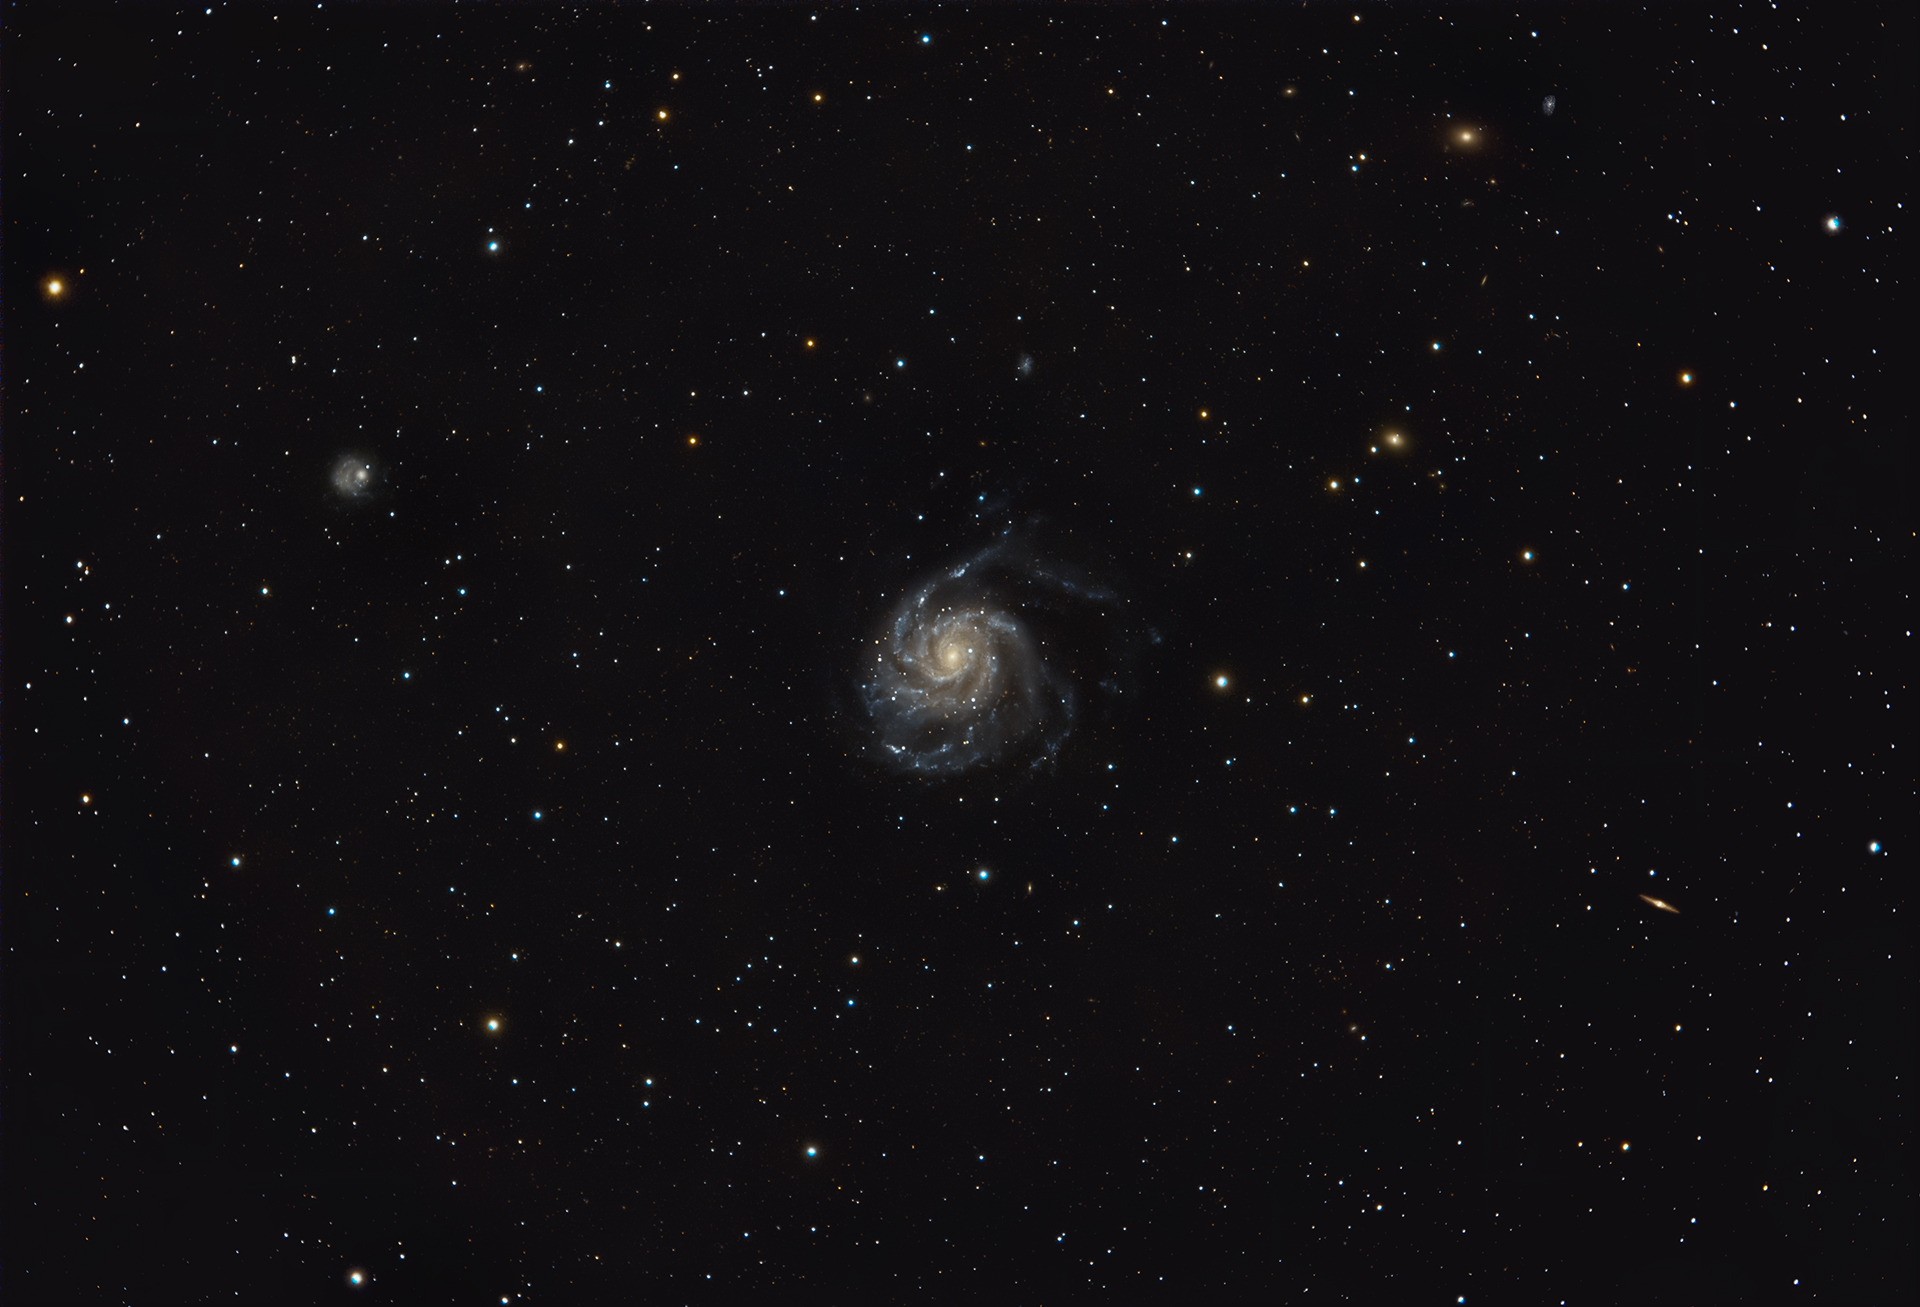 Szélkerék-galaxis - Messier 101